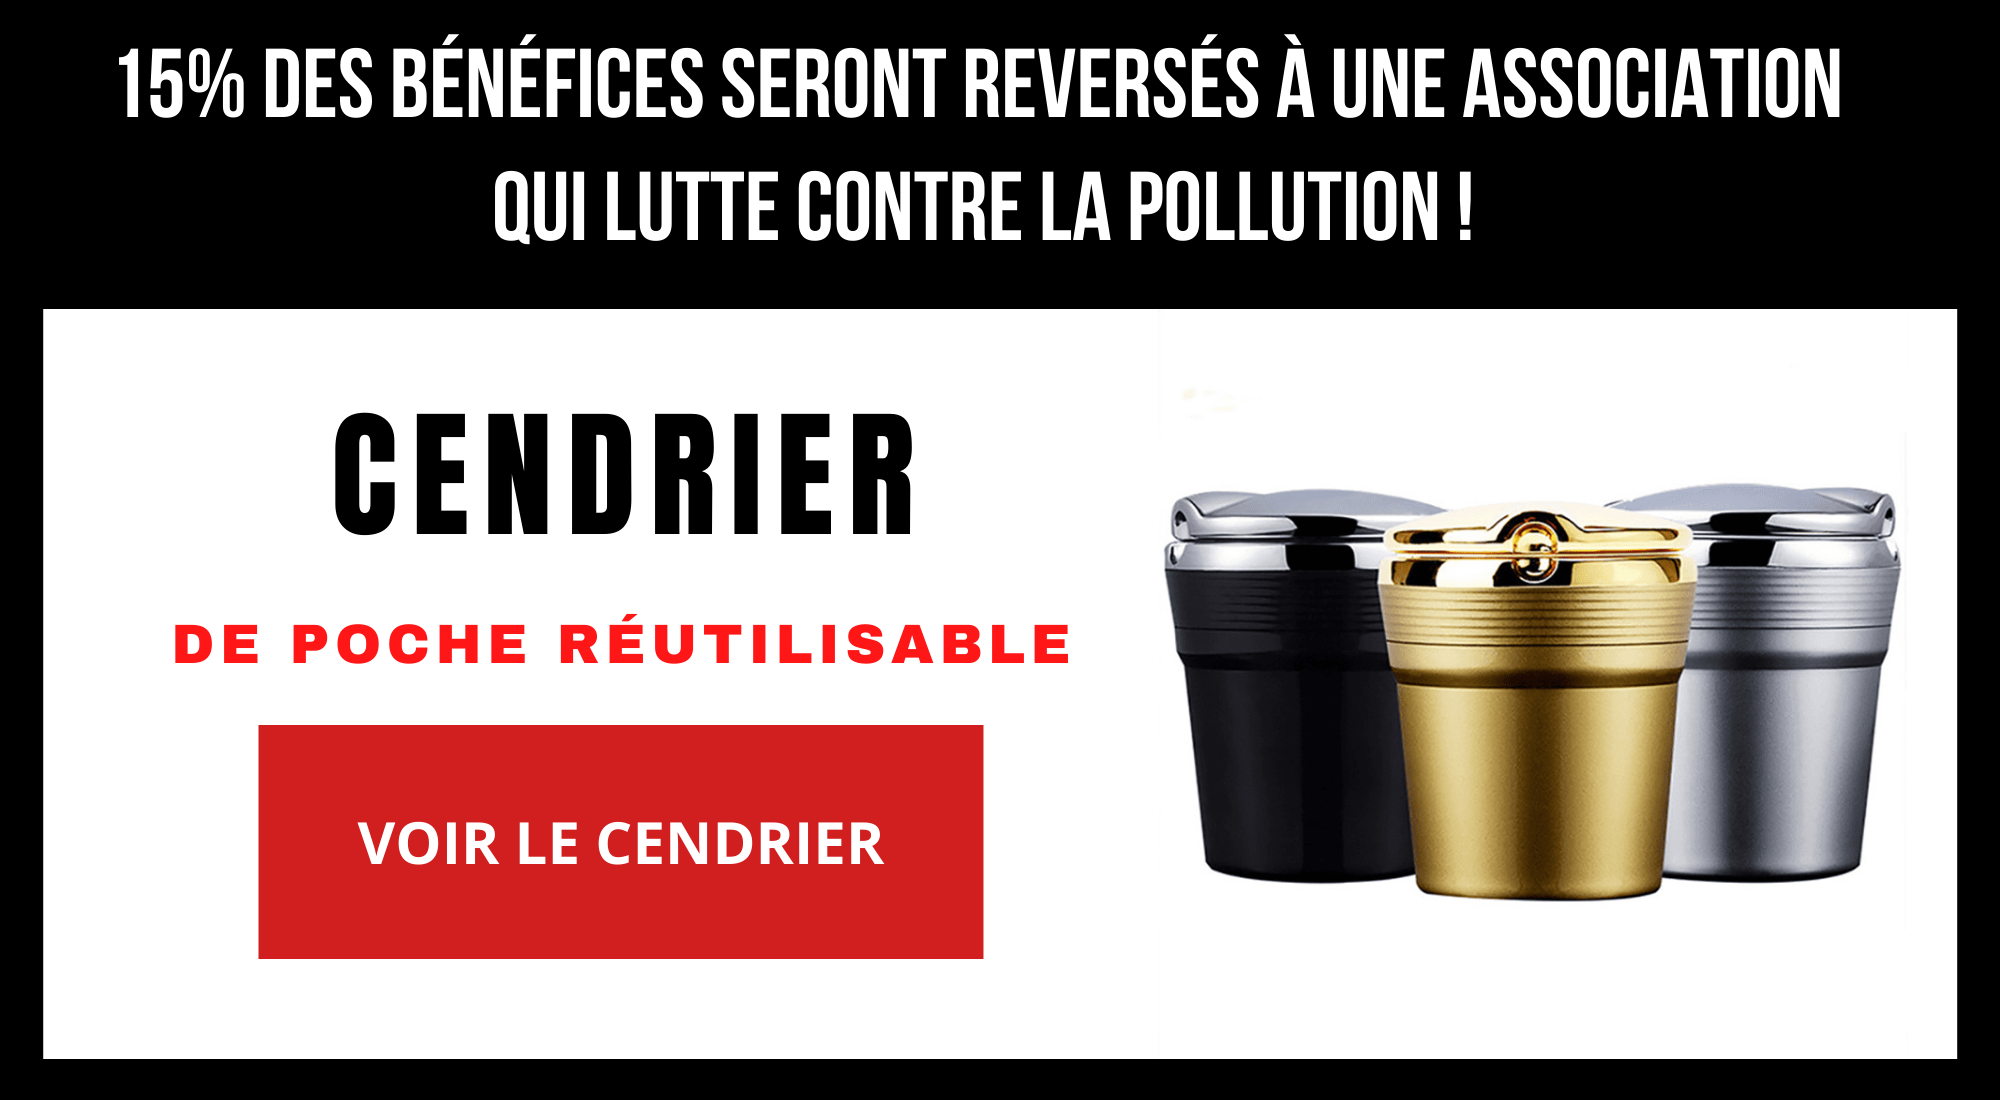 Une action marketing écolo avec ces cendriers de poche anti pollution